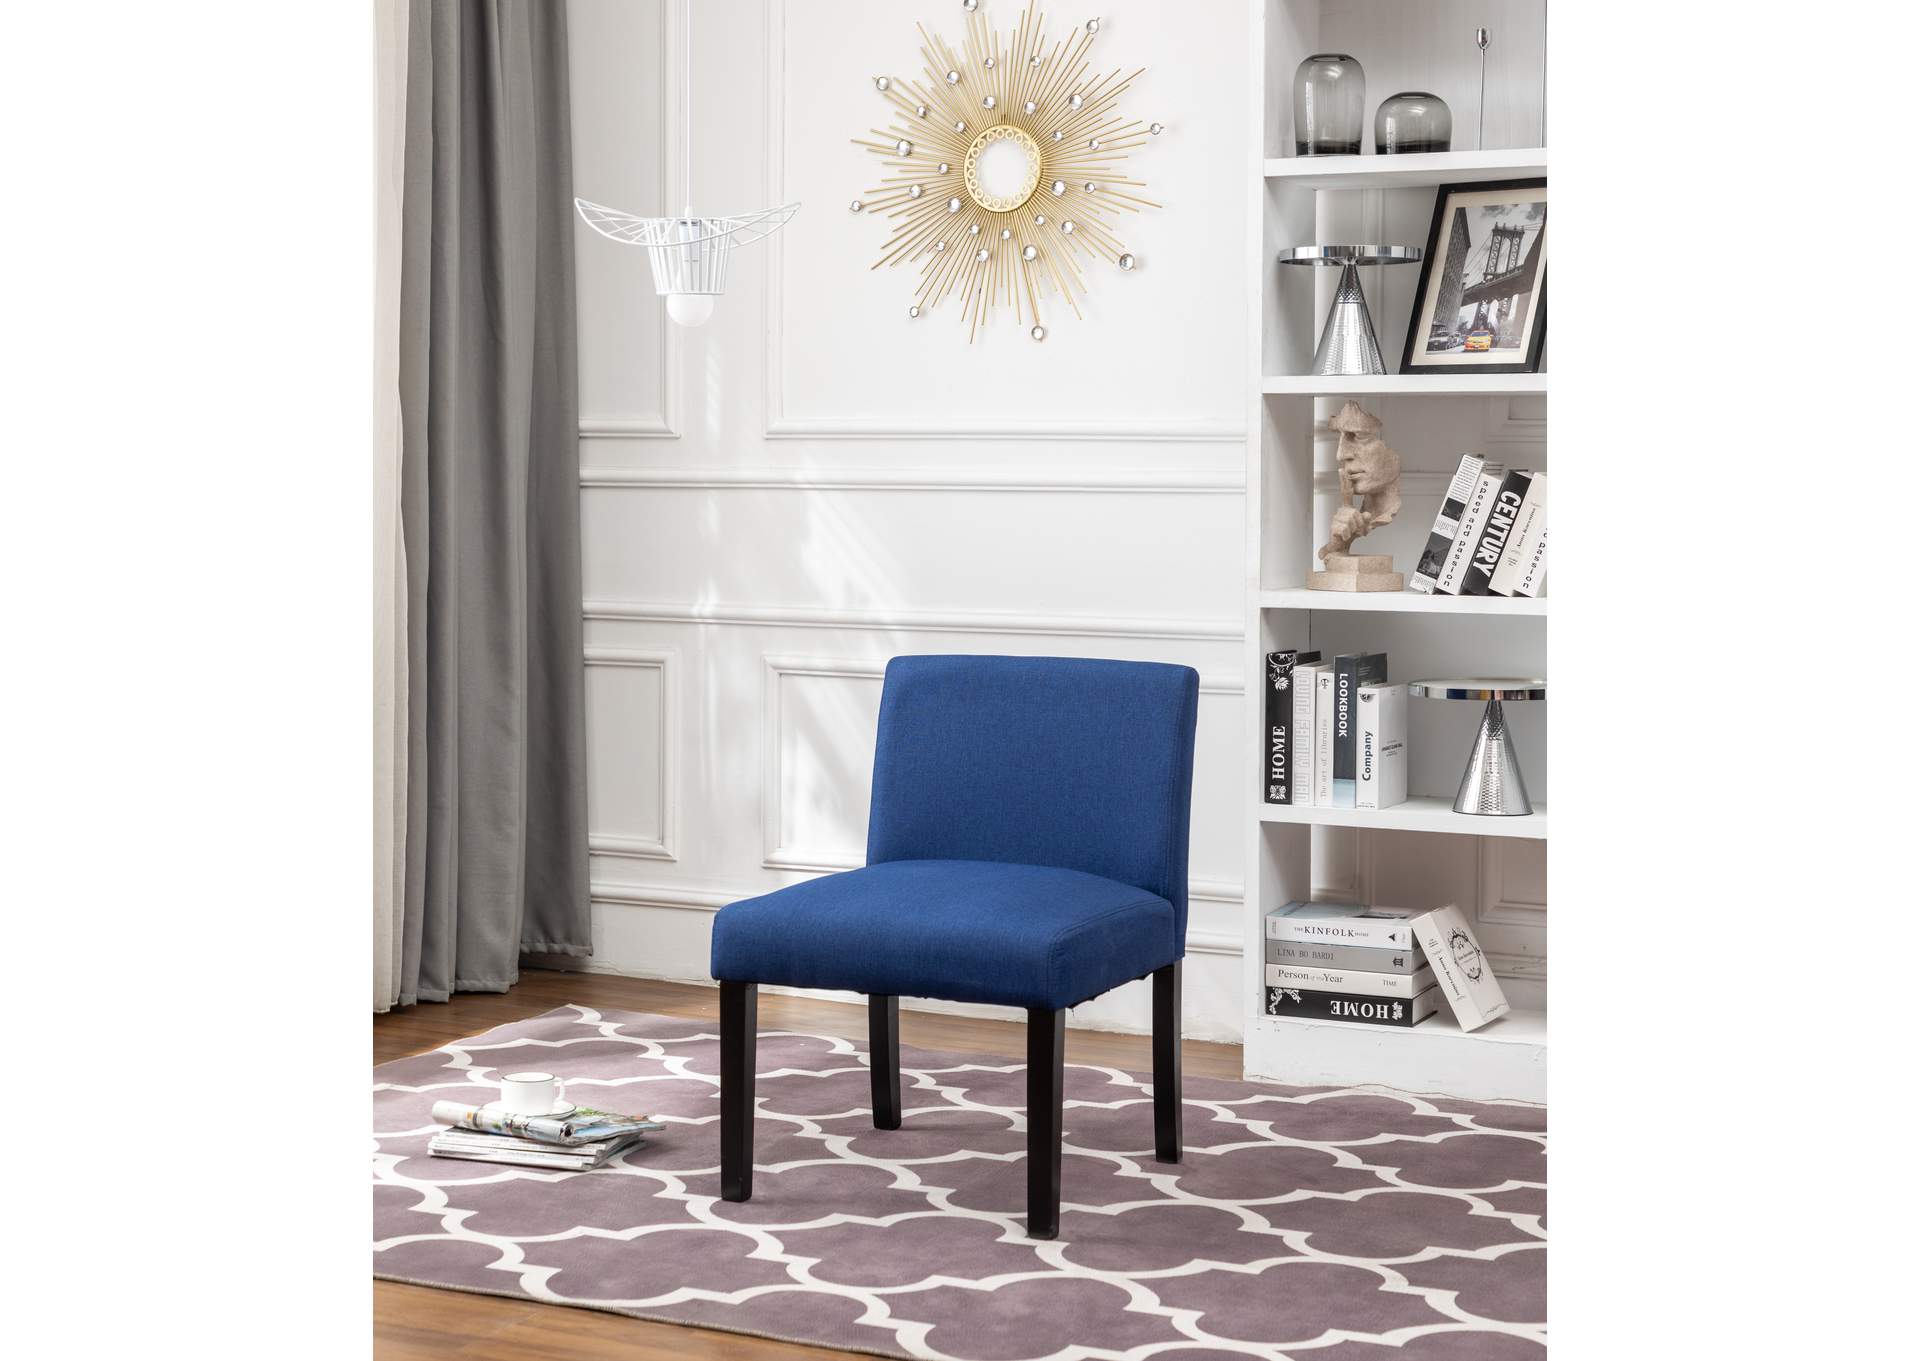 C002U Blue Chair 2-In-1Box,Global Trading